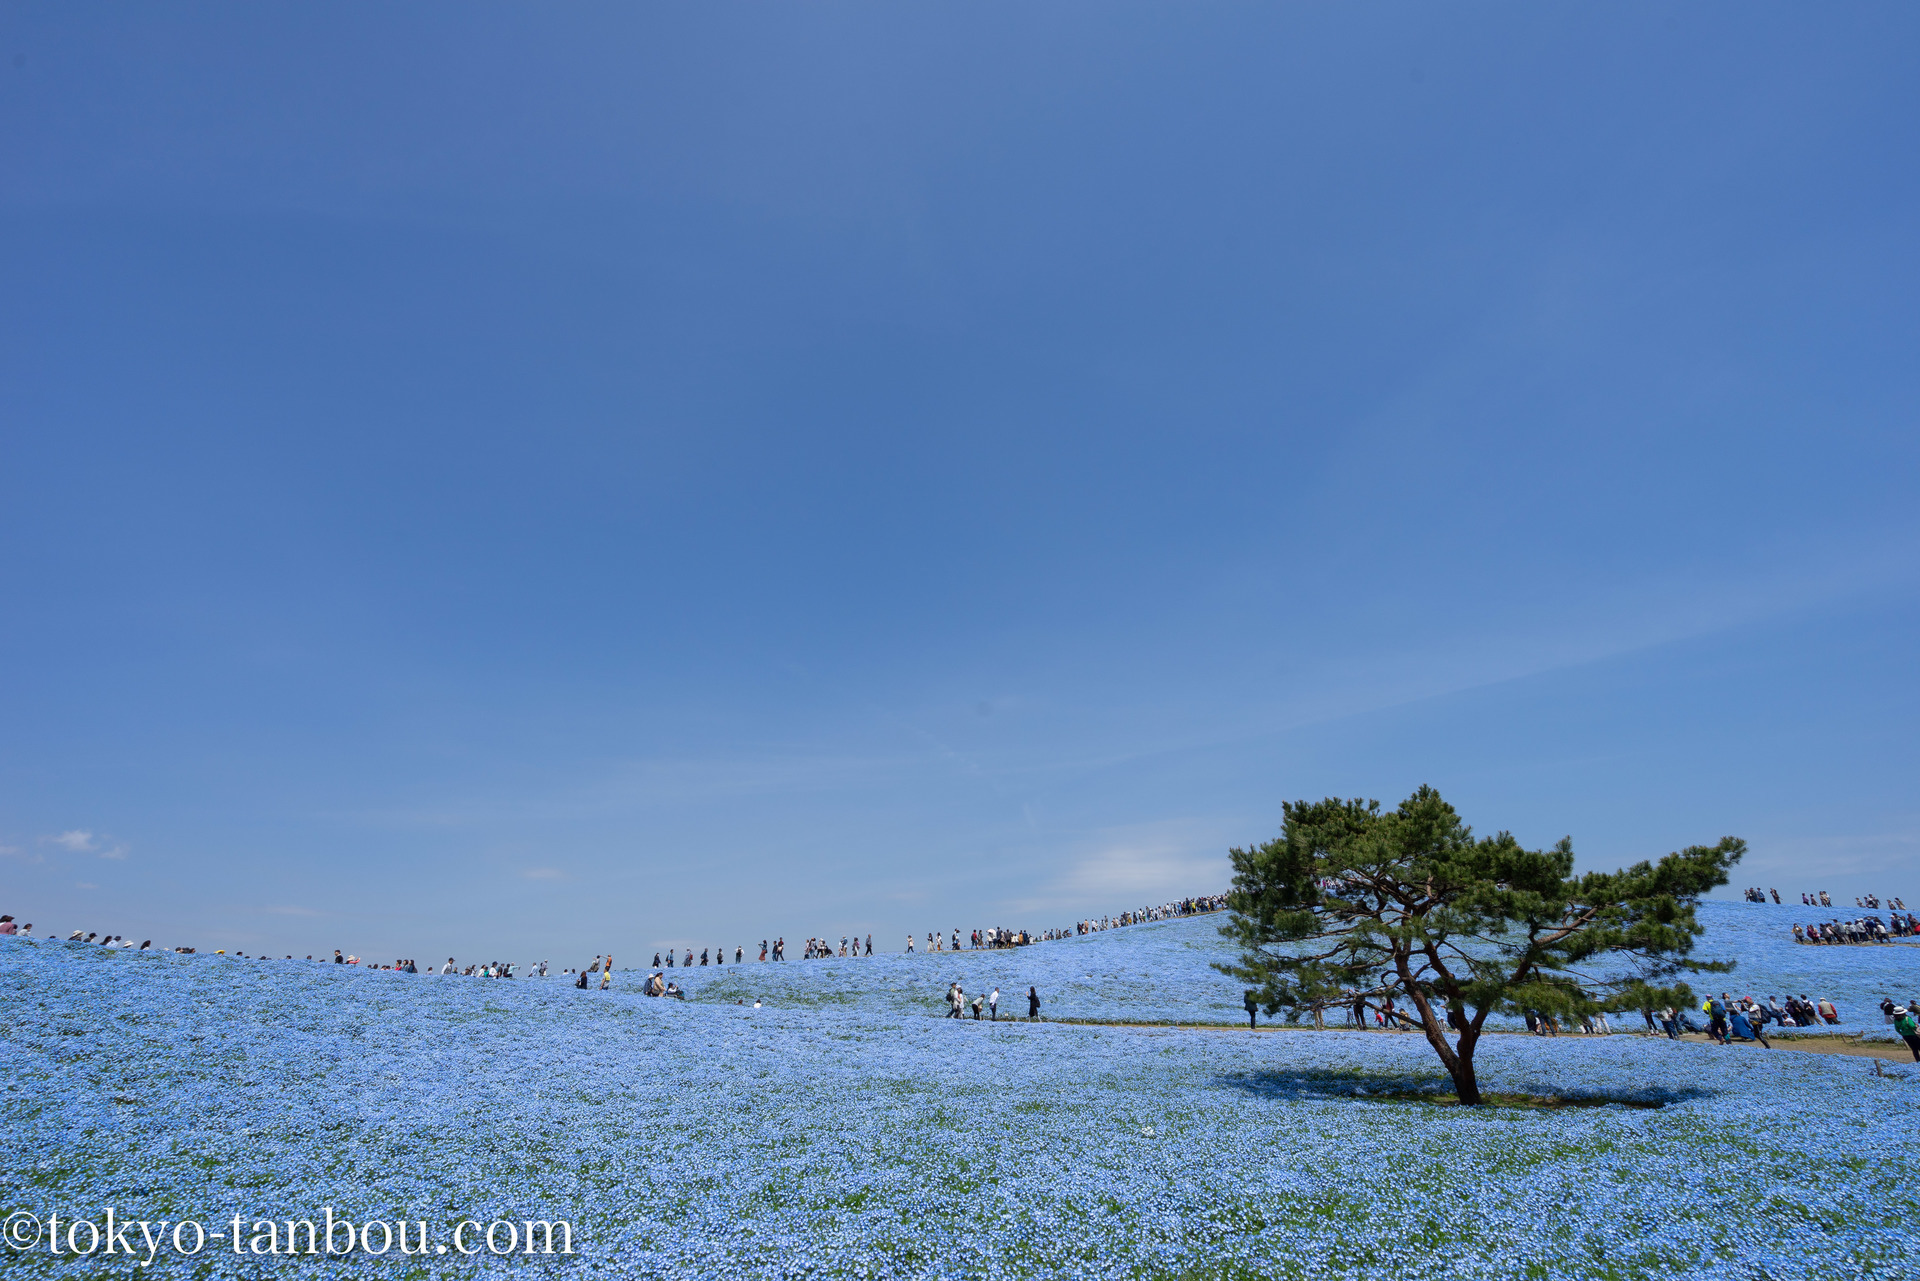 日本の絶景 国営ひたち海浜公園 みはらしの丘で ネモフィラを撮影した話 ソニーのカメラで東京探訪記